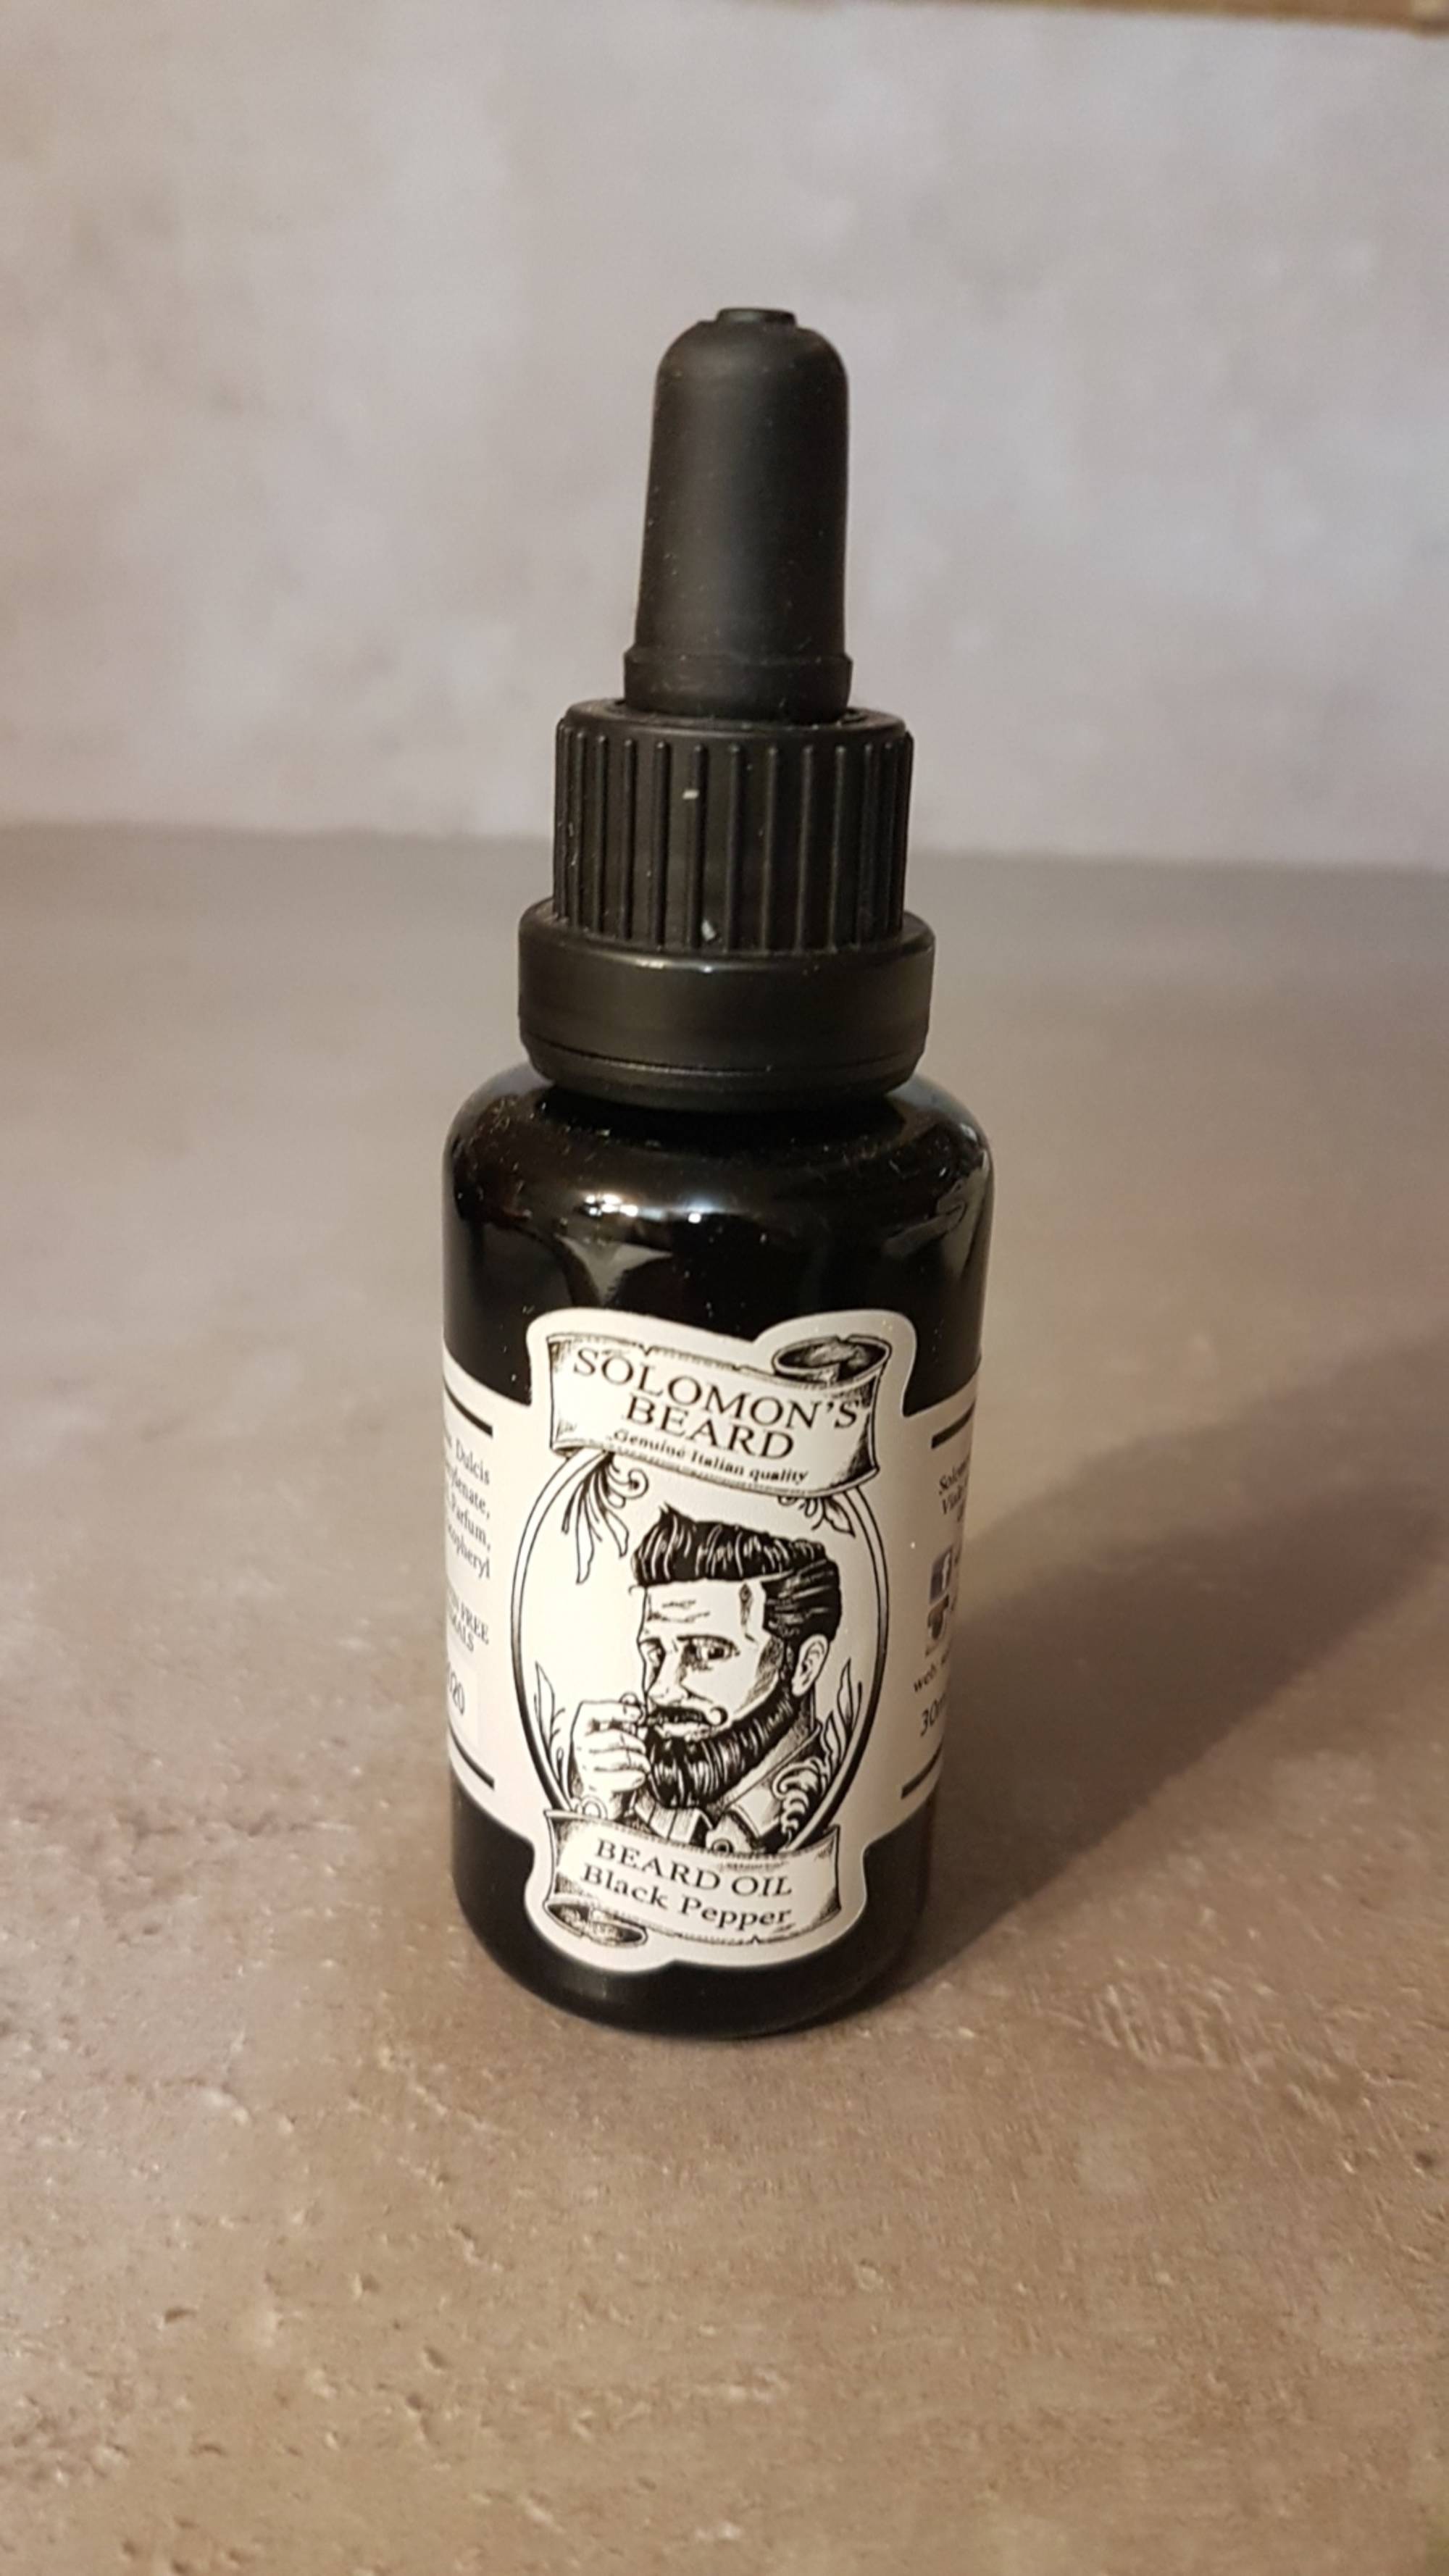 SOLOMON'S BEARD - Beard oil - Black pepper